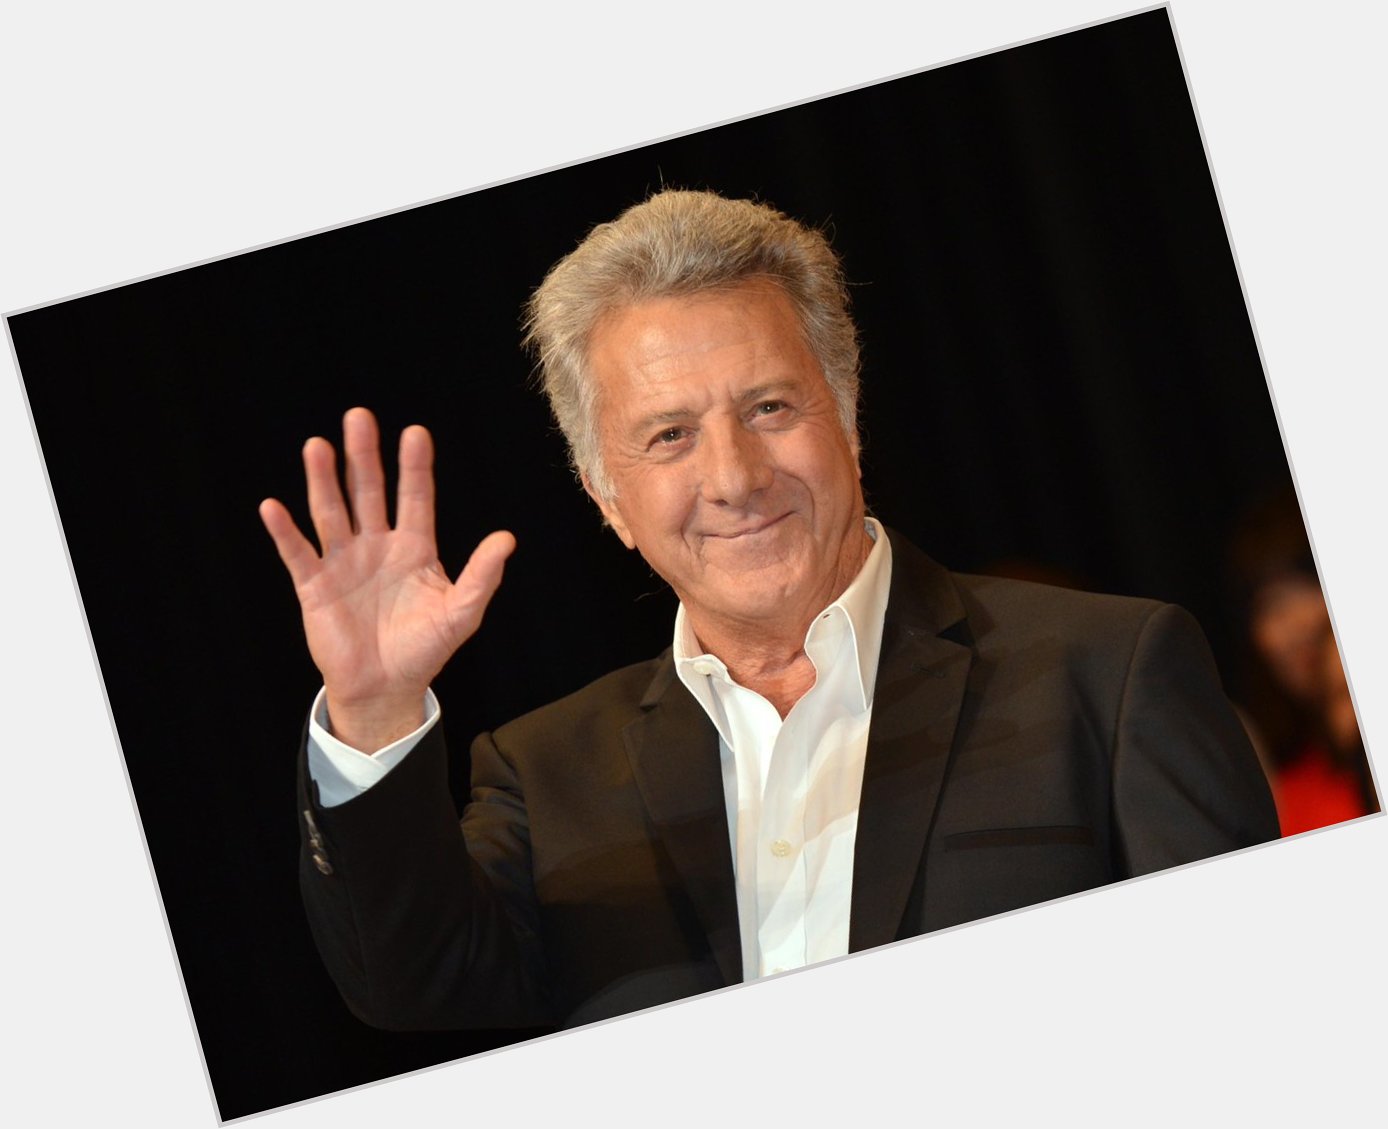  ReinaaRoyale: Happy birthday, Dustin Hoffman! 